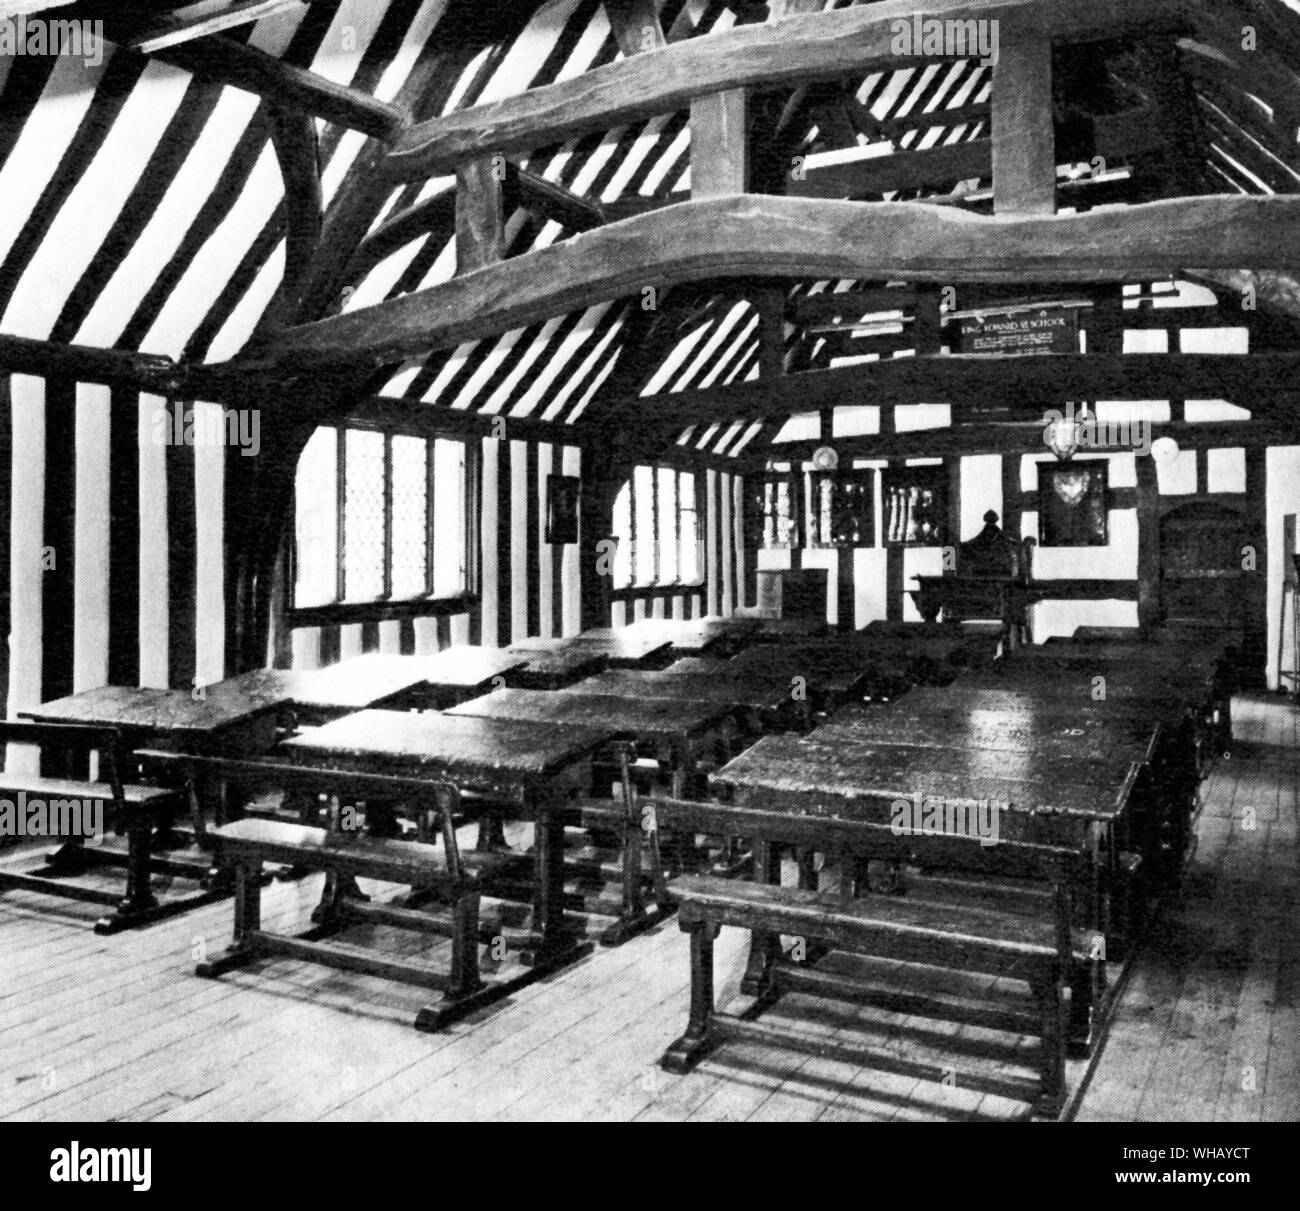 Interieur von Stratford Grammar School, wo Shakespeare ging zur Schule Stockfoto